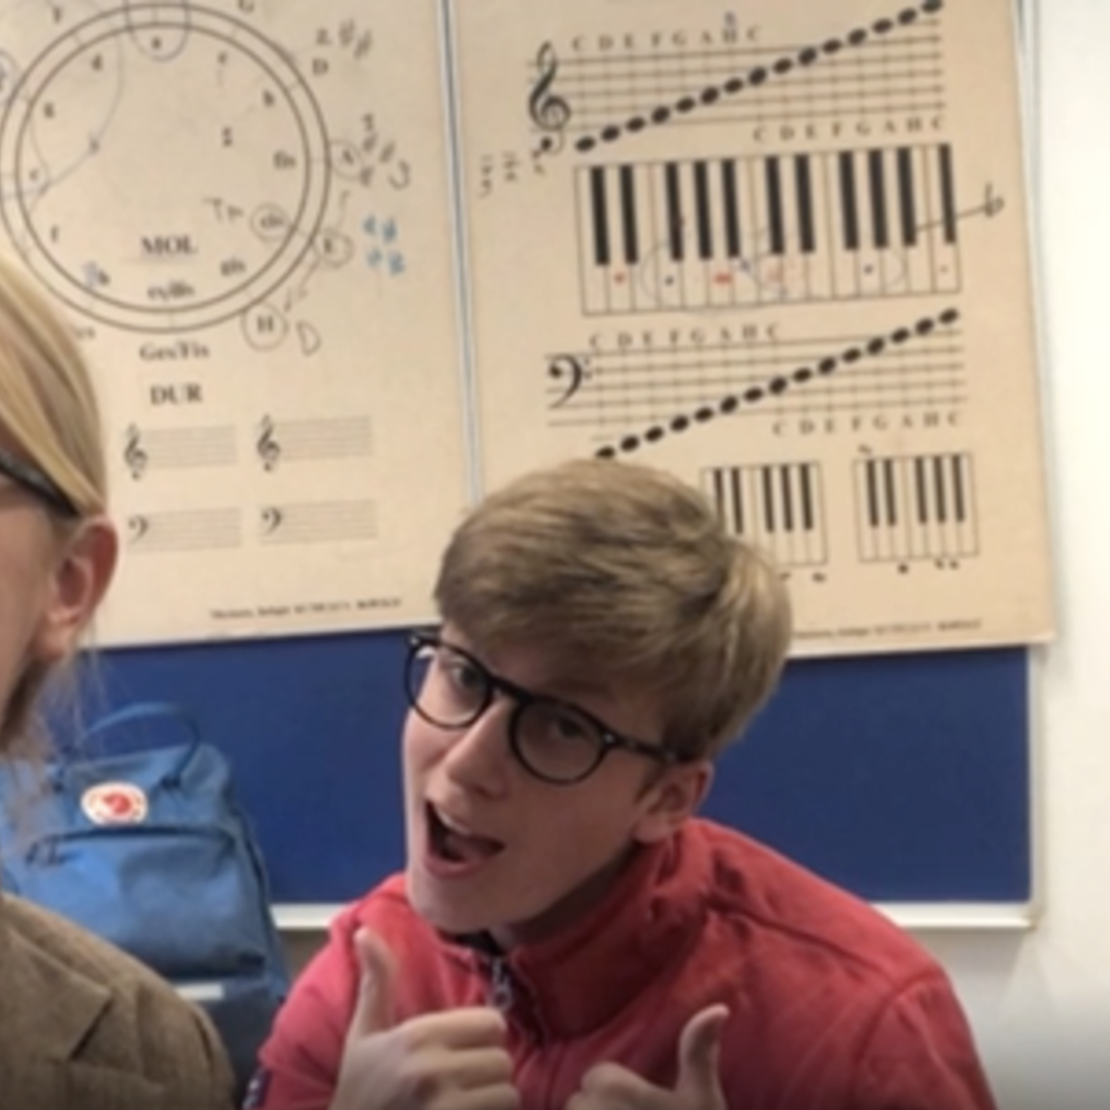 Billede af elever som præsenterer faget musik i videoen